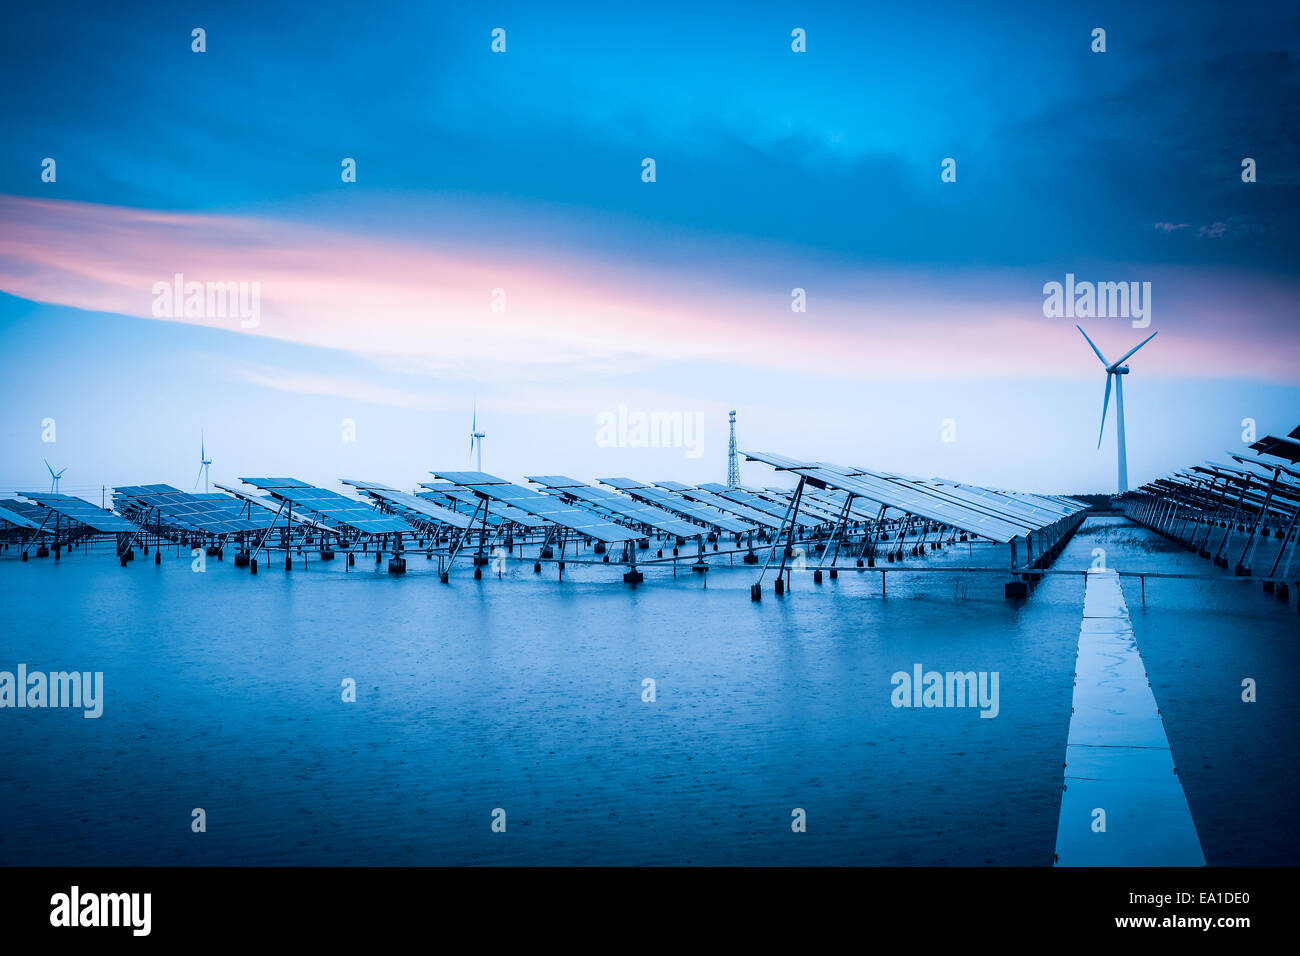 Energia solare ed eolica in caso di maltempo Foto Stock